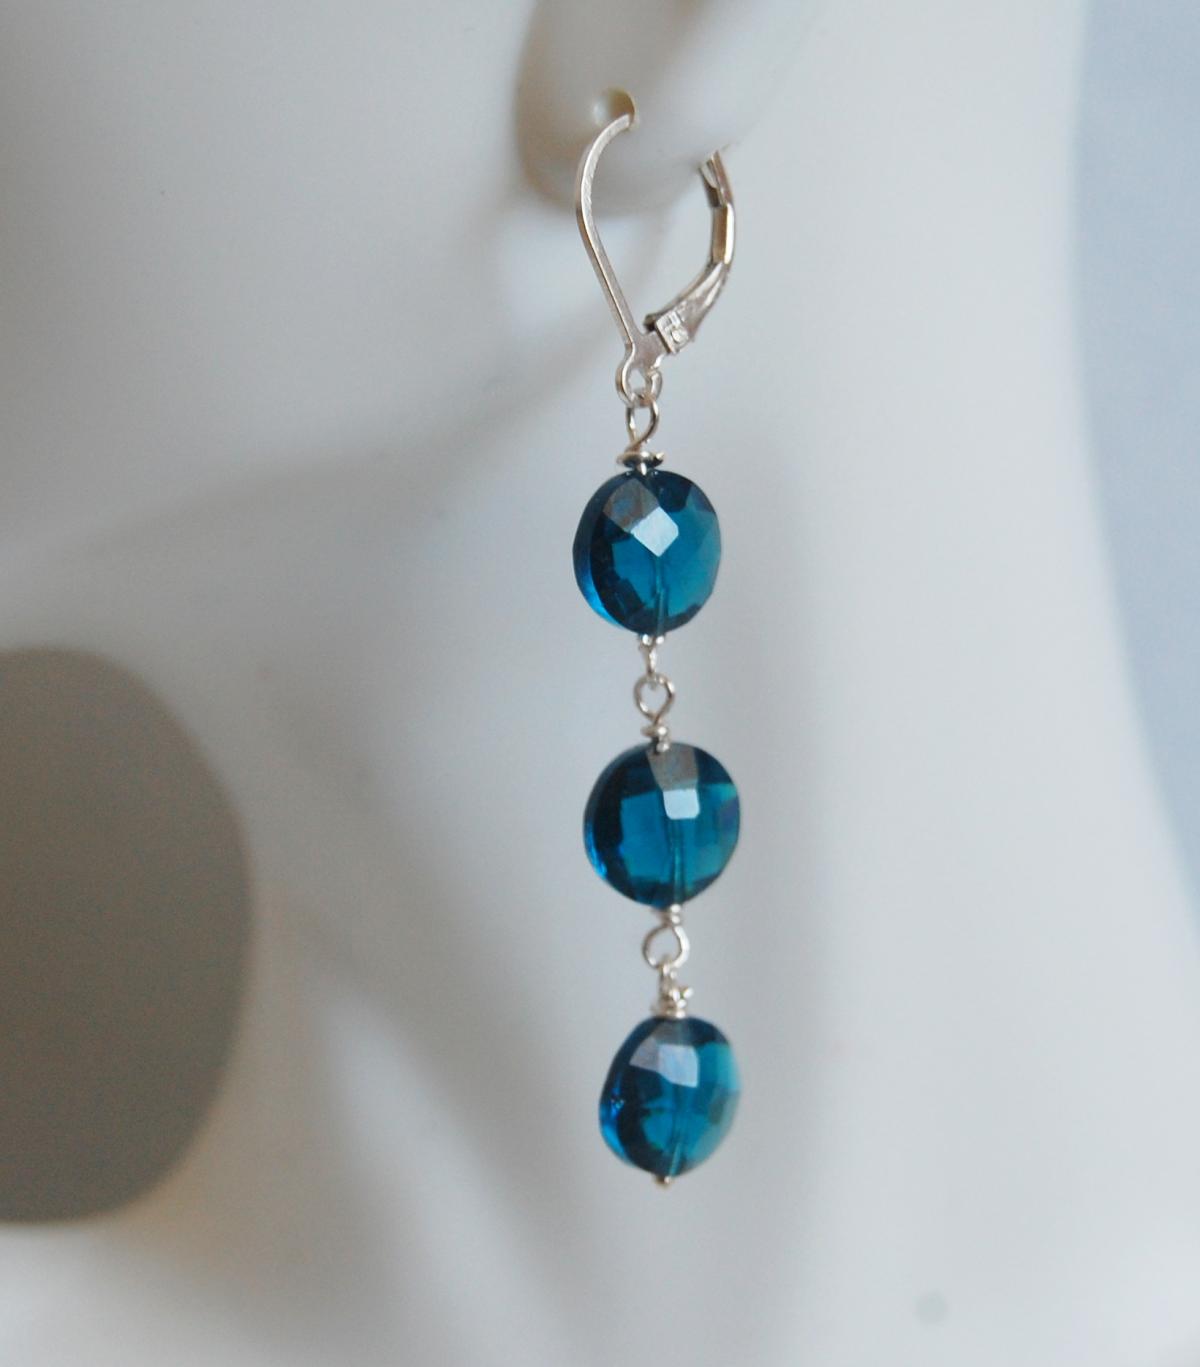 London Blue Quartz Earrings On Sterling Silver - Women's Jewellery-wedding Jewelry- Bridal Jewelry -mother's Day